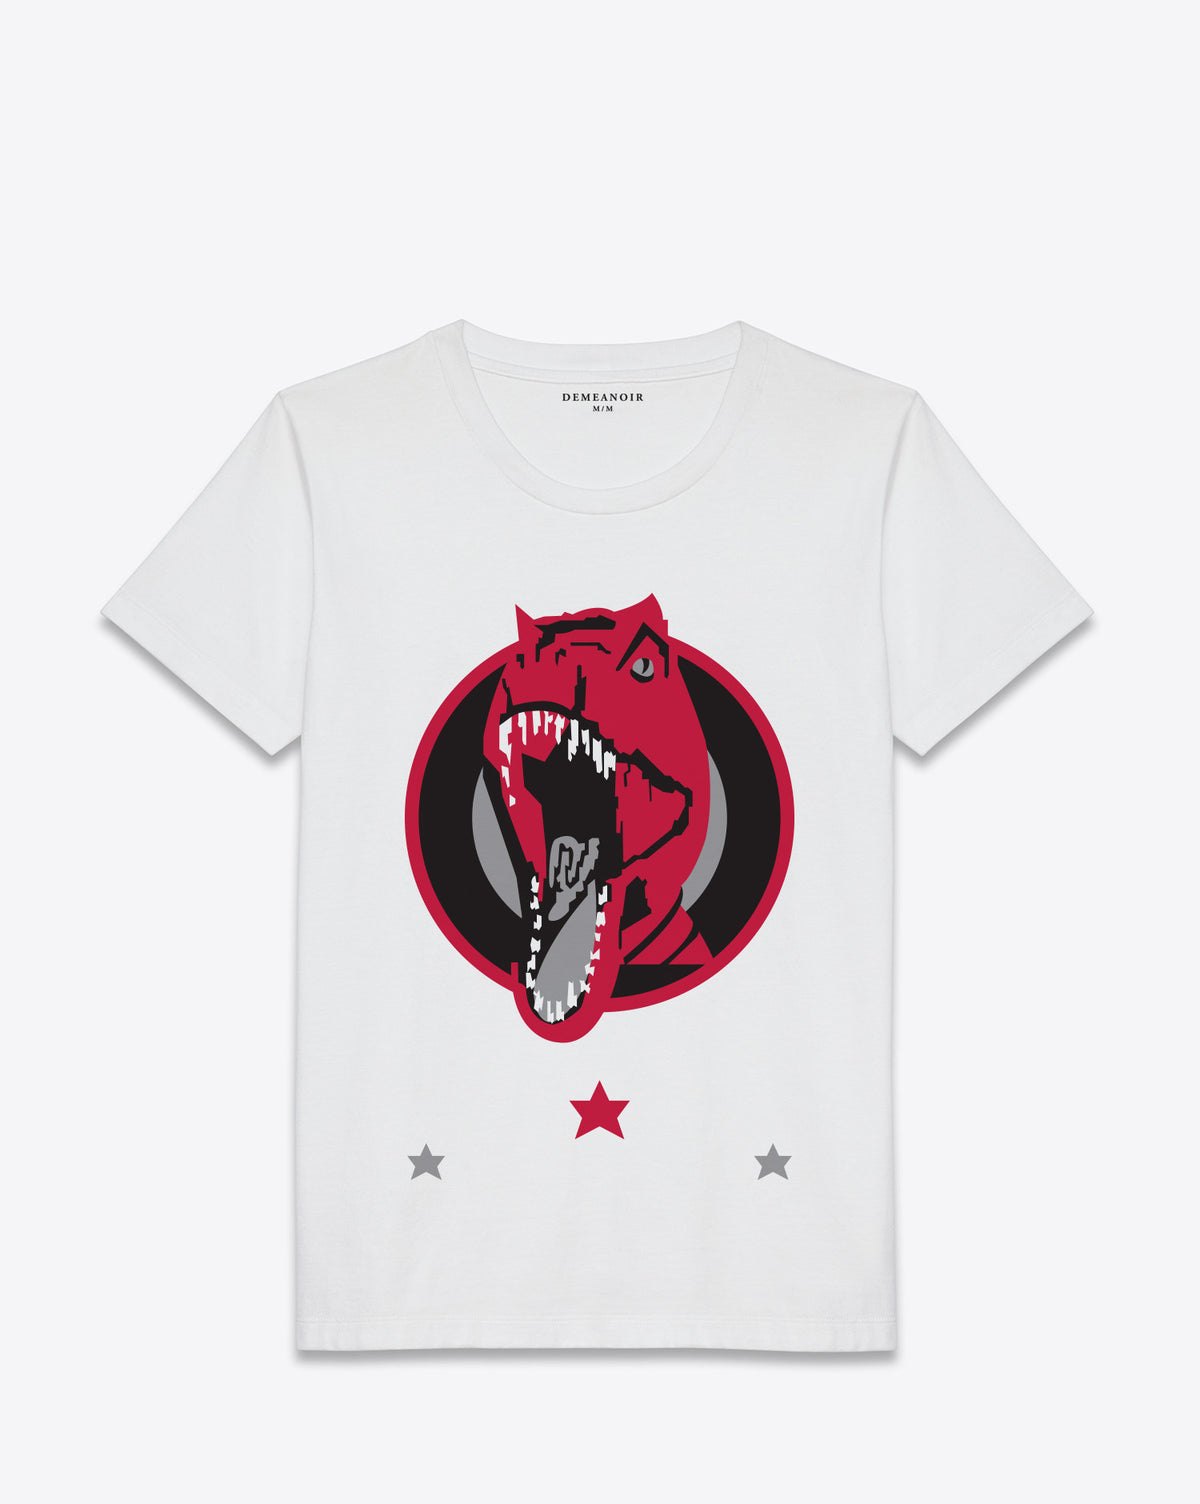 Dinosaur T-Shirt White - DEMEANOIR - 1